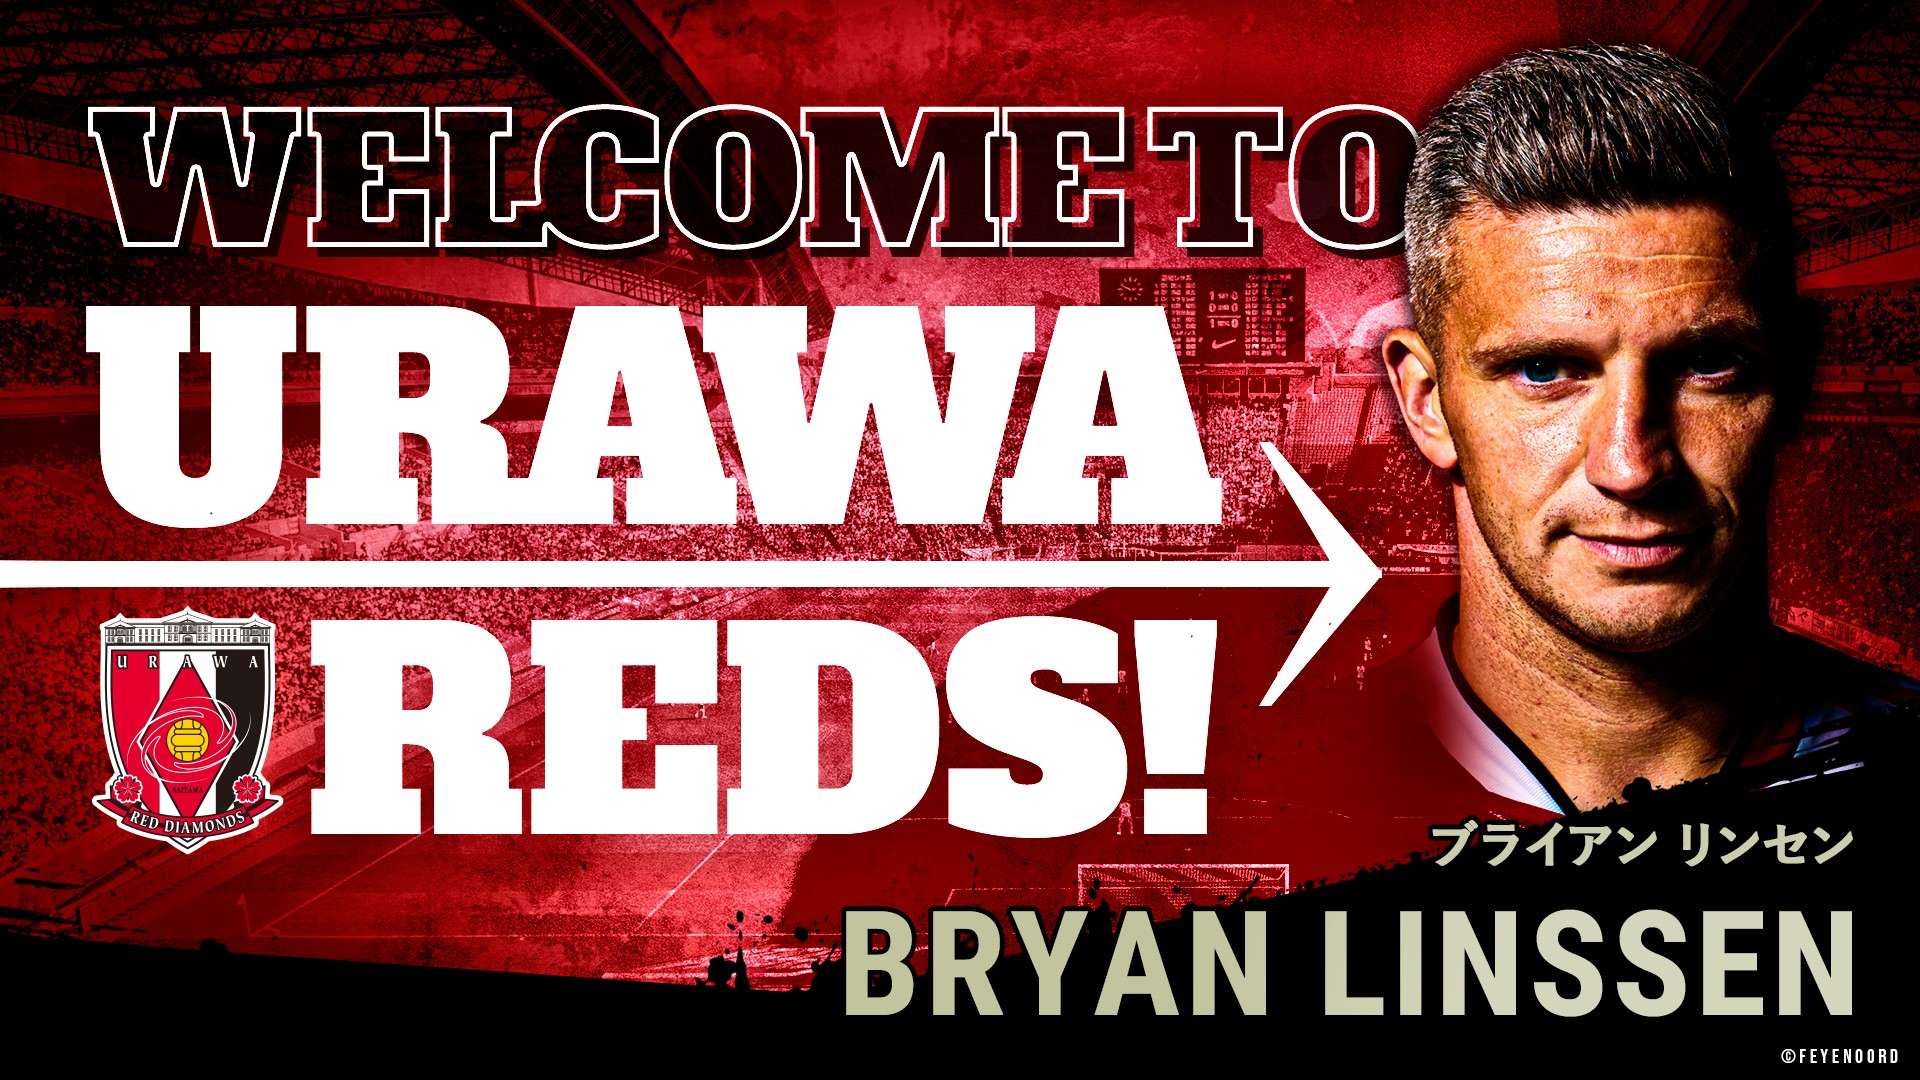 ブライアン リンセン選手 完全移籍加入クラブ間合意のお知らせ Urawa Red Diamonds Official Website